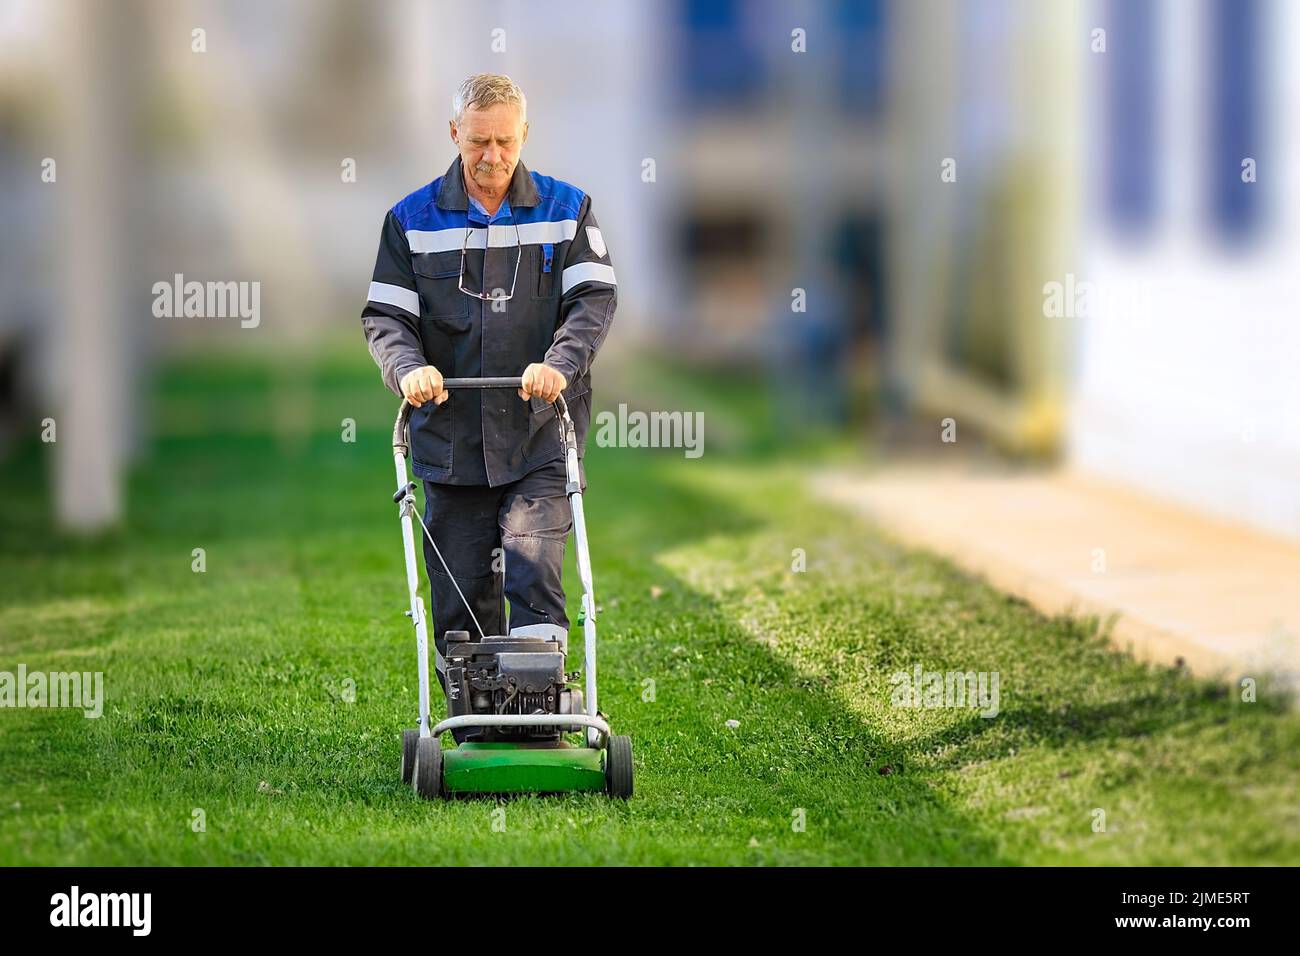 Ein älterer Arbeiter mäht an einem sonnigen Tag den Rasen. Ein Mann mit Arbeitskleidung arbeitet mit einem Rasenmäher auf einer grünen Wiese. Stockfoto